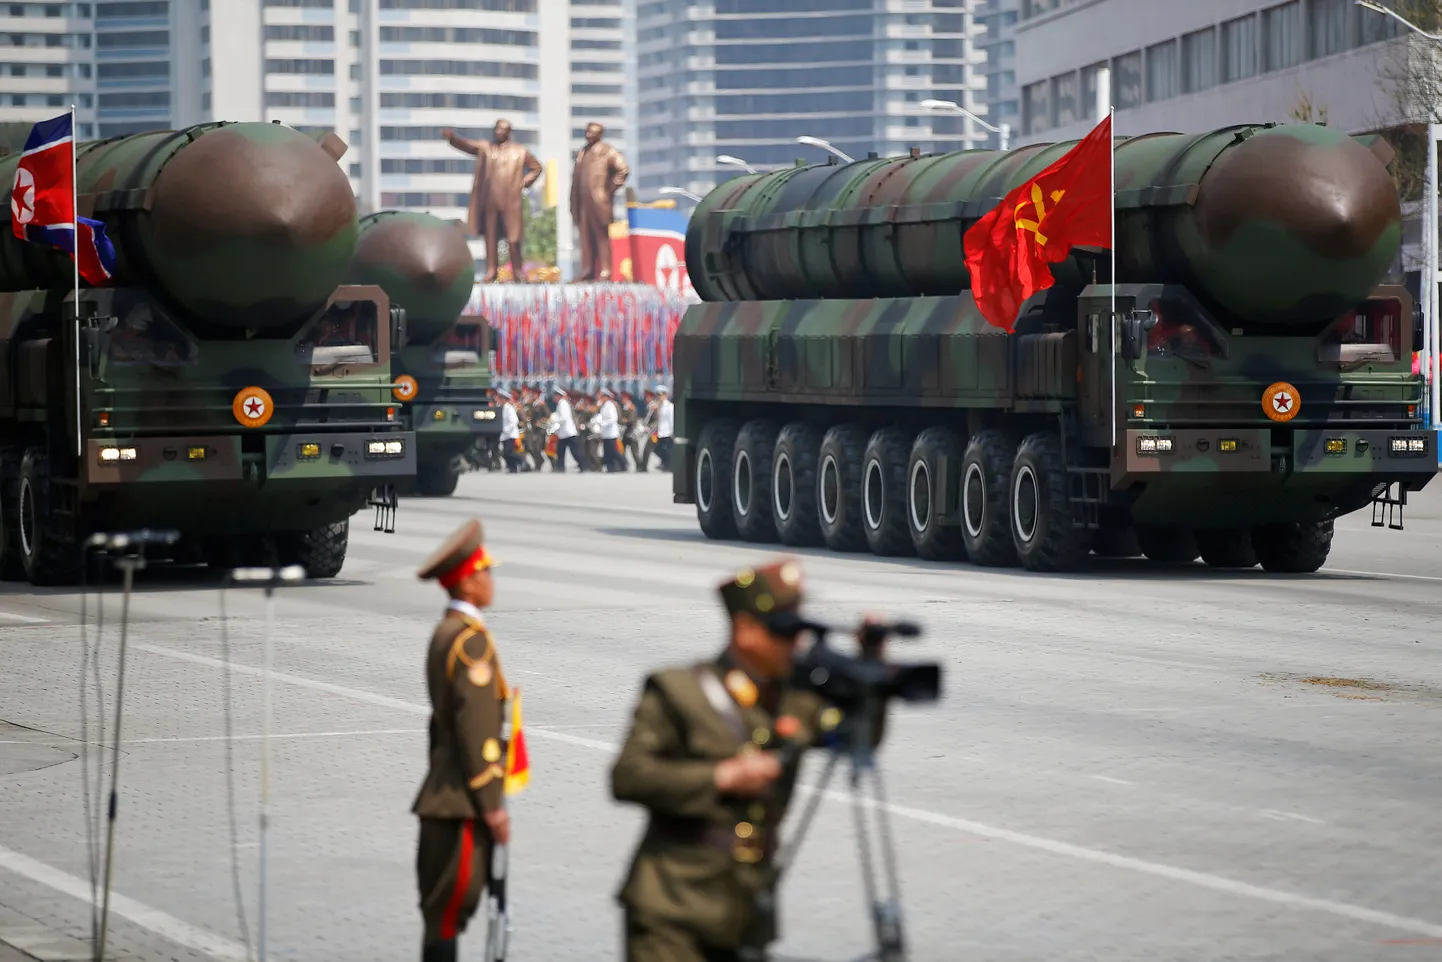 Põhja-Korea sõjaväeparaad tähistamaks riigi rajaja Kim Il-sungi 105. sünniaastapäeva